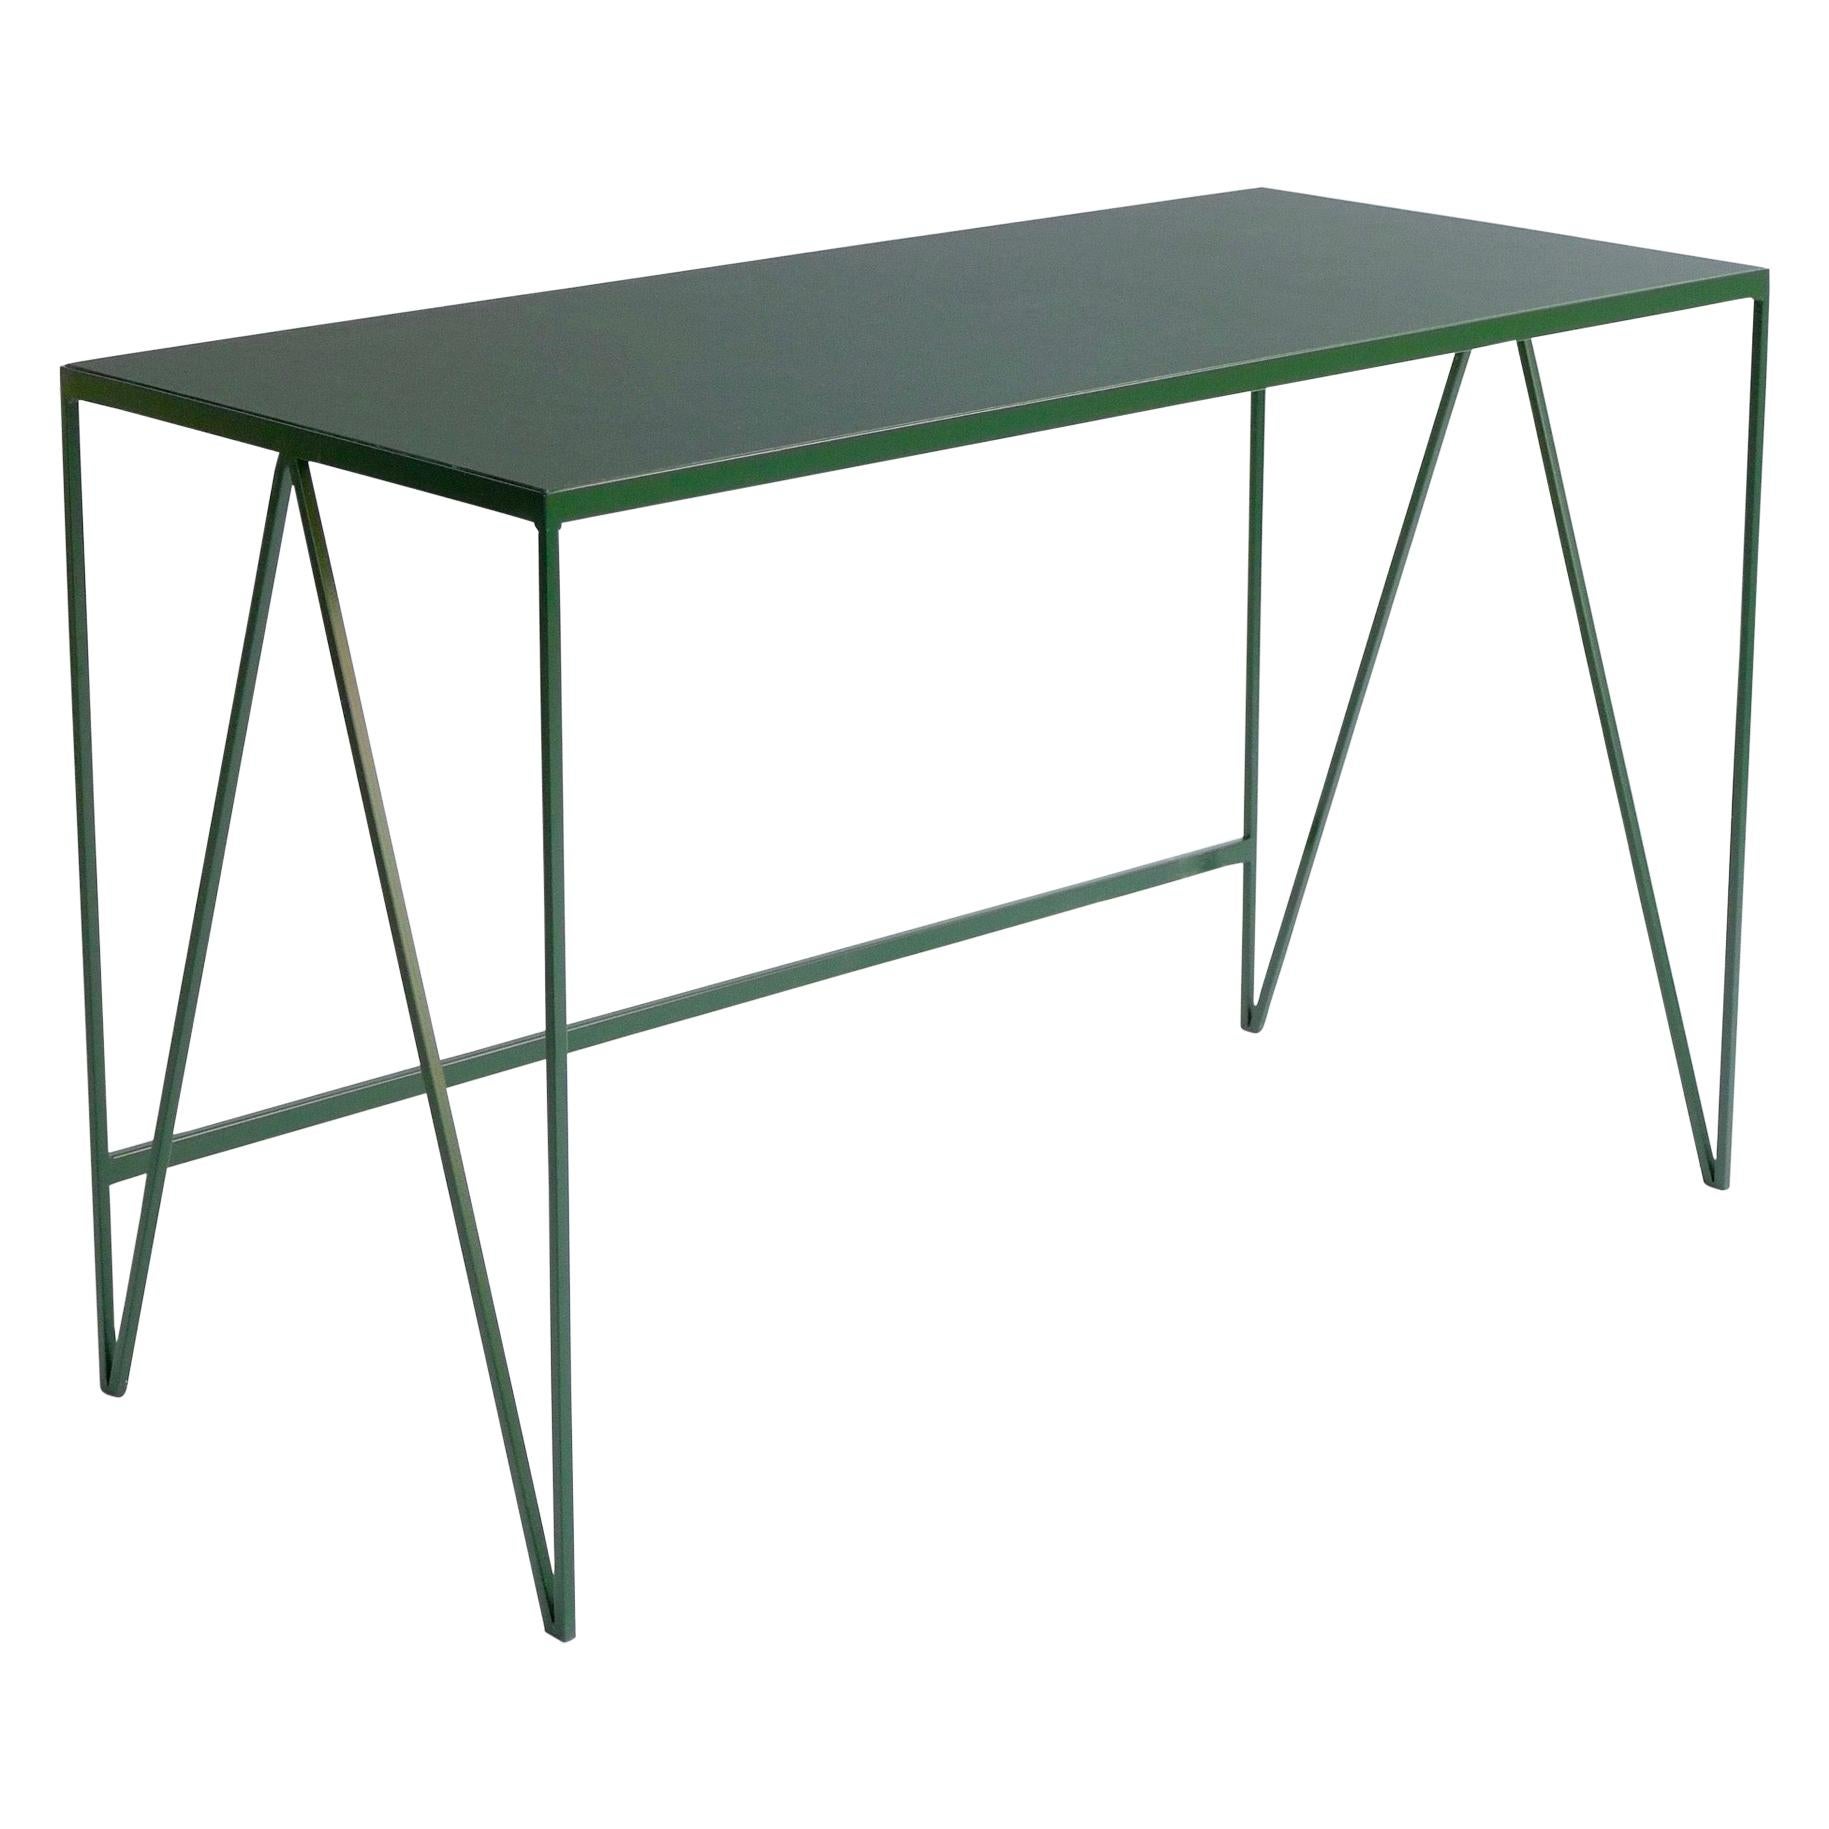 Bureau d'étude vert profond avec plateau de table en linoléum naturel, personnalisable